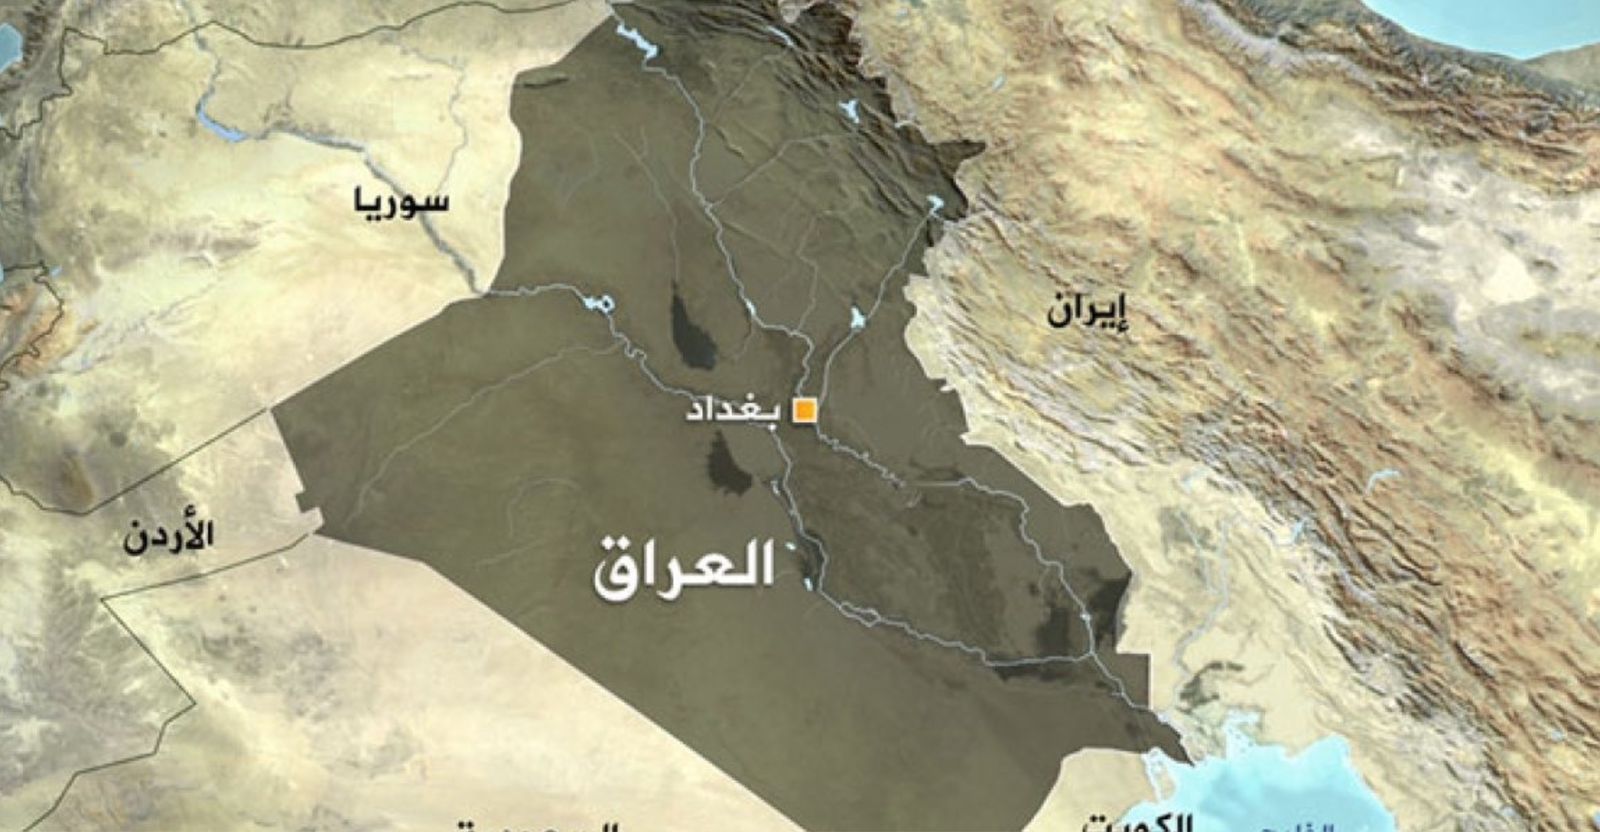 تقرير أمريكي يسلط الضوء على تحديات معقدة داخلية وخارجية تحكم علاقات العراق